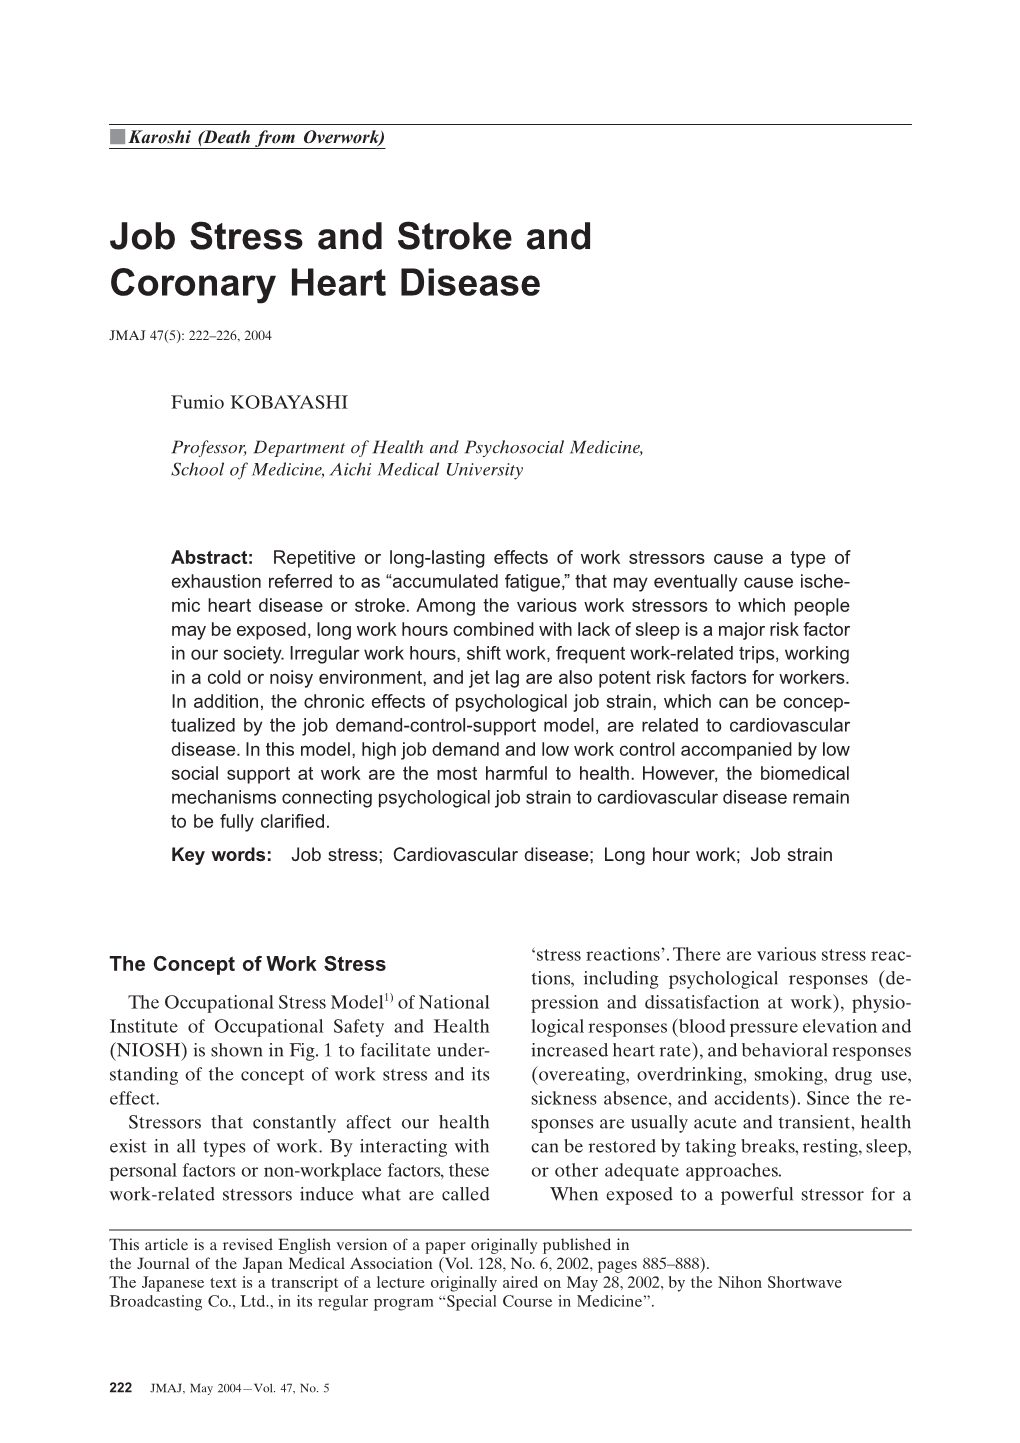 Job Stress and Stroke and Coronary Heart Disease